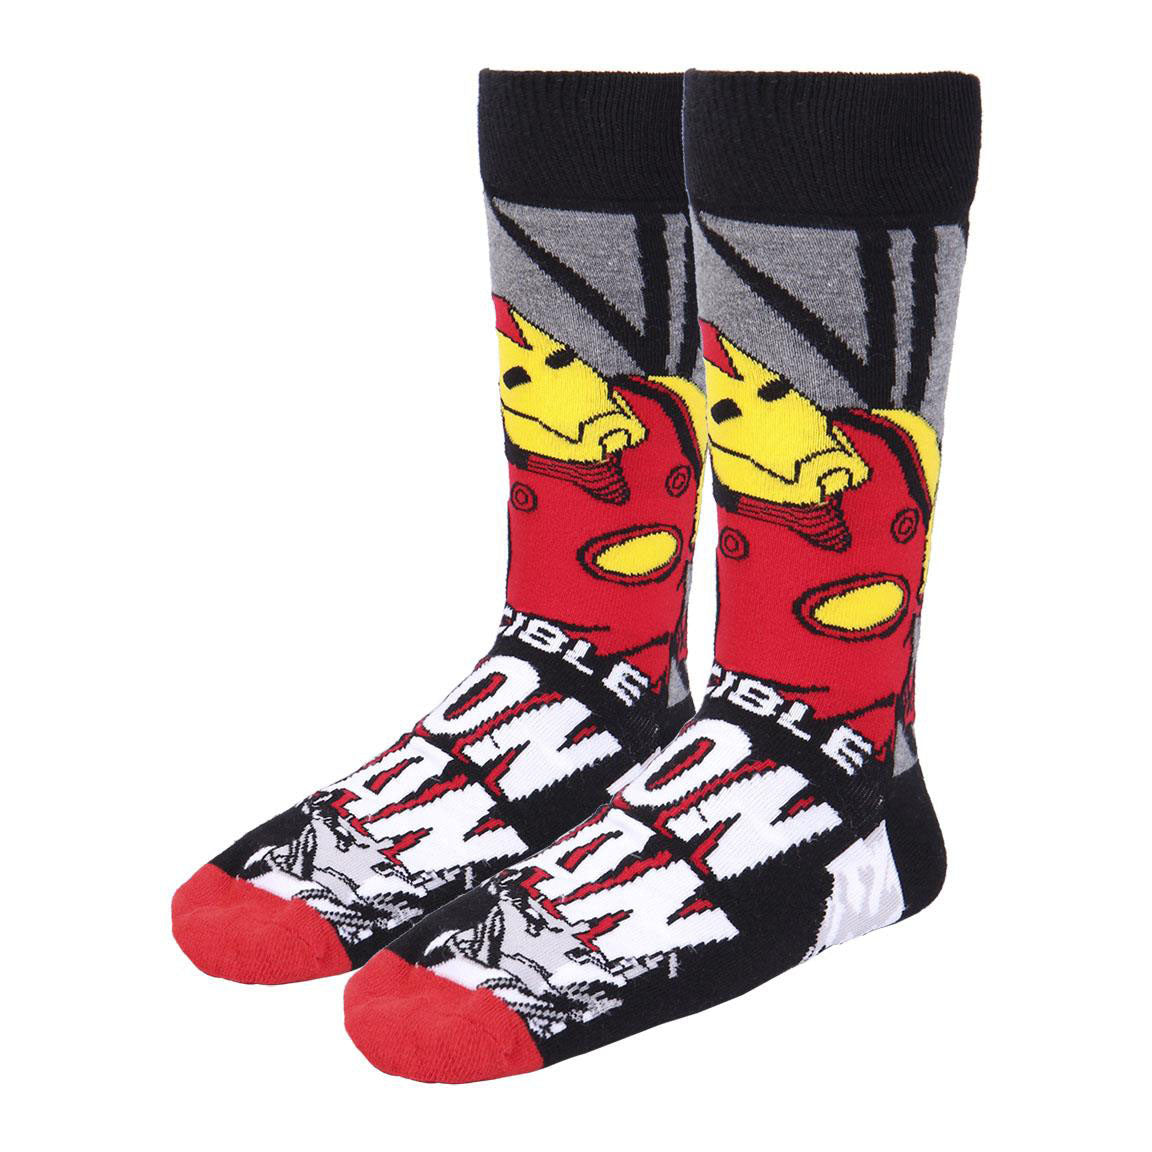 3 Paar Marvel -Socken - Avengers